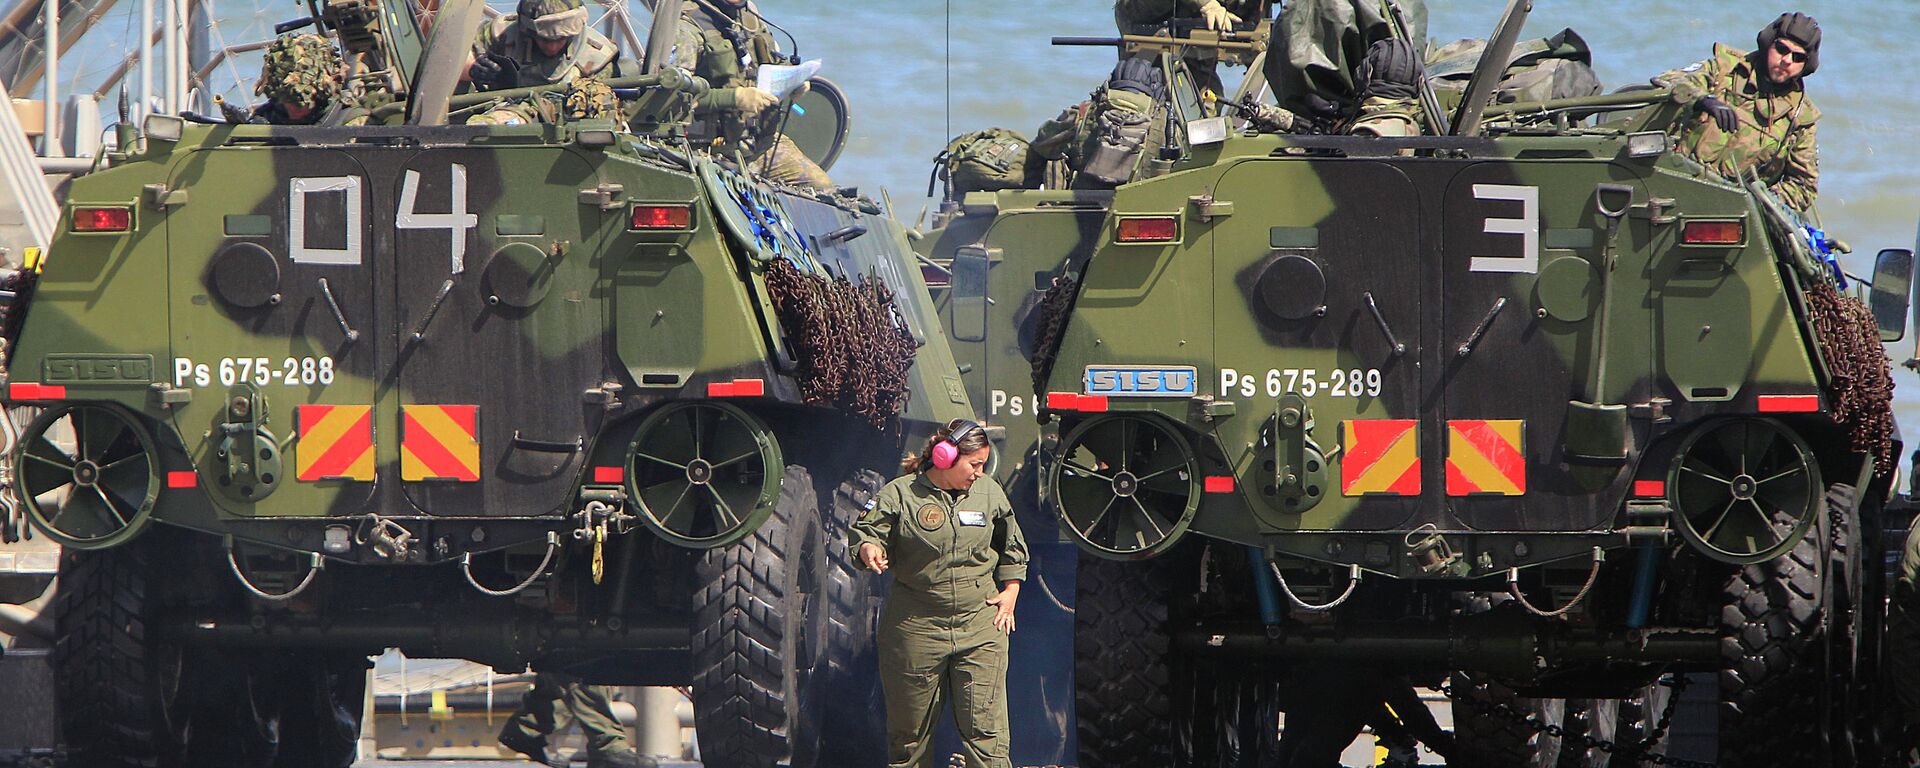 Tropas de la OTAN participan en ejercicios militares en el Mar Báltico, cerca de las fronteras con Rusia. Polonia, 17 de junio de 2015 - Sputnik Mundo, 1920, 11.03.2022